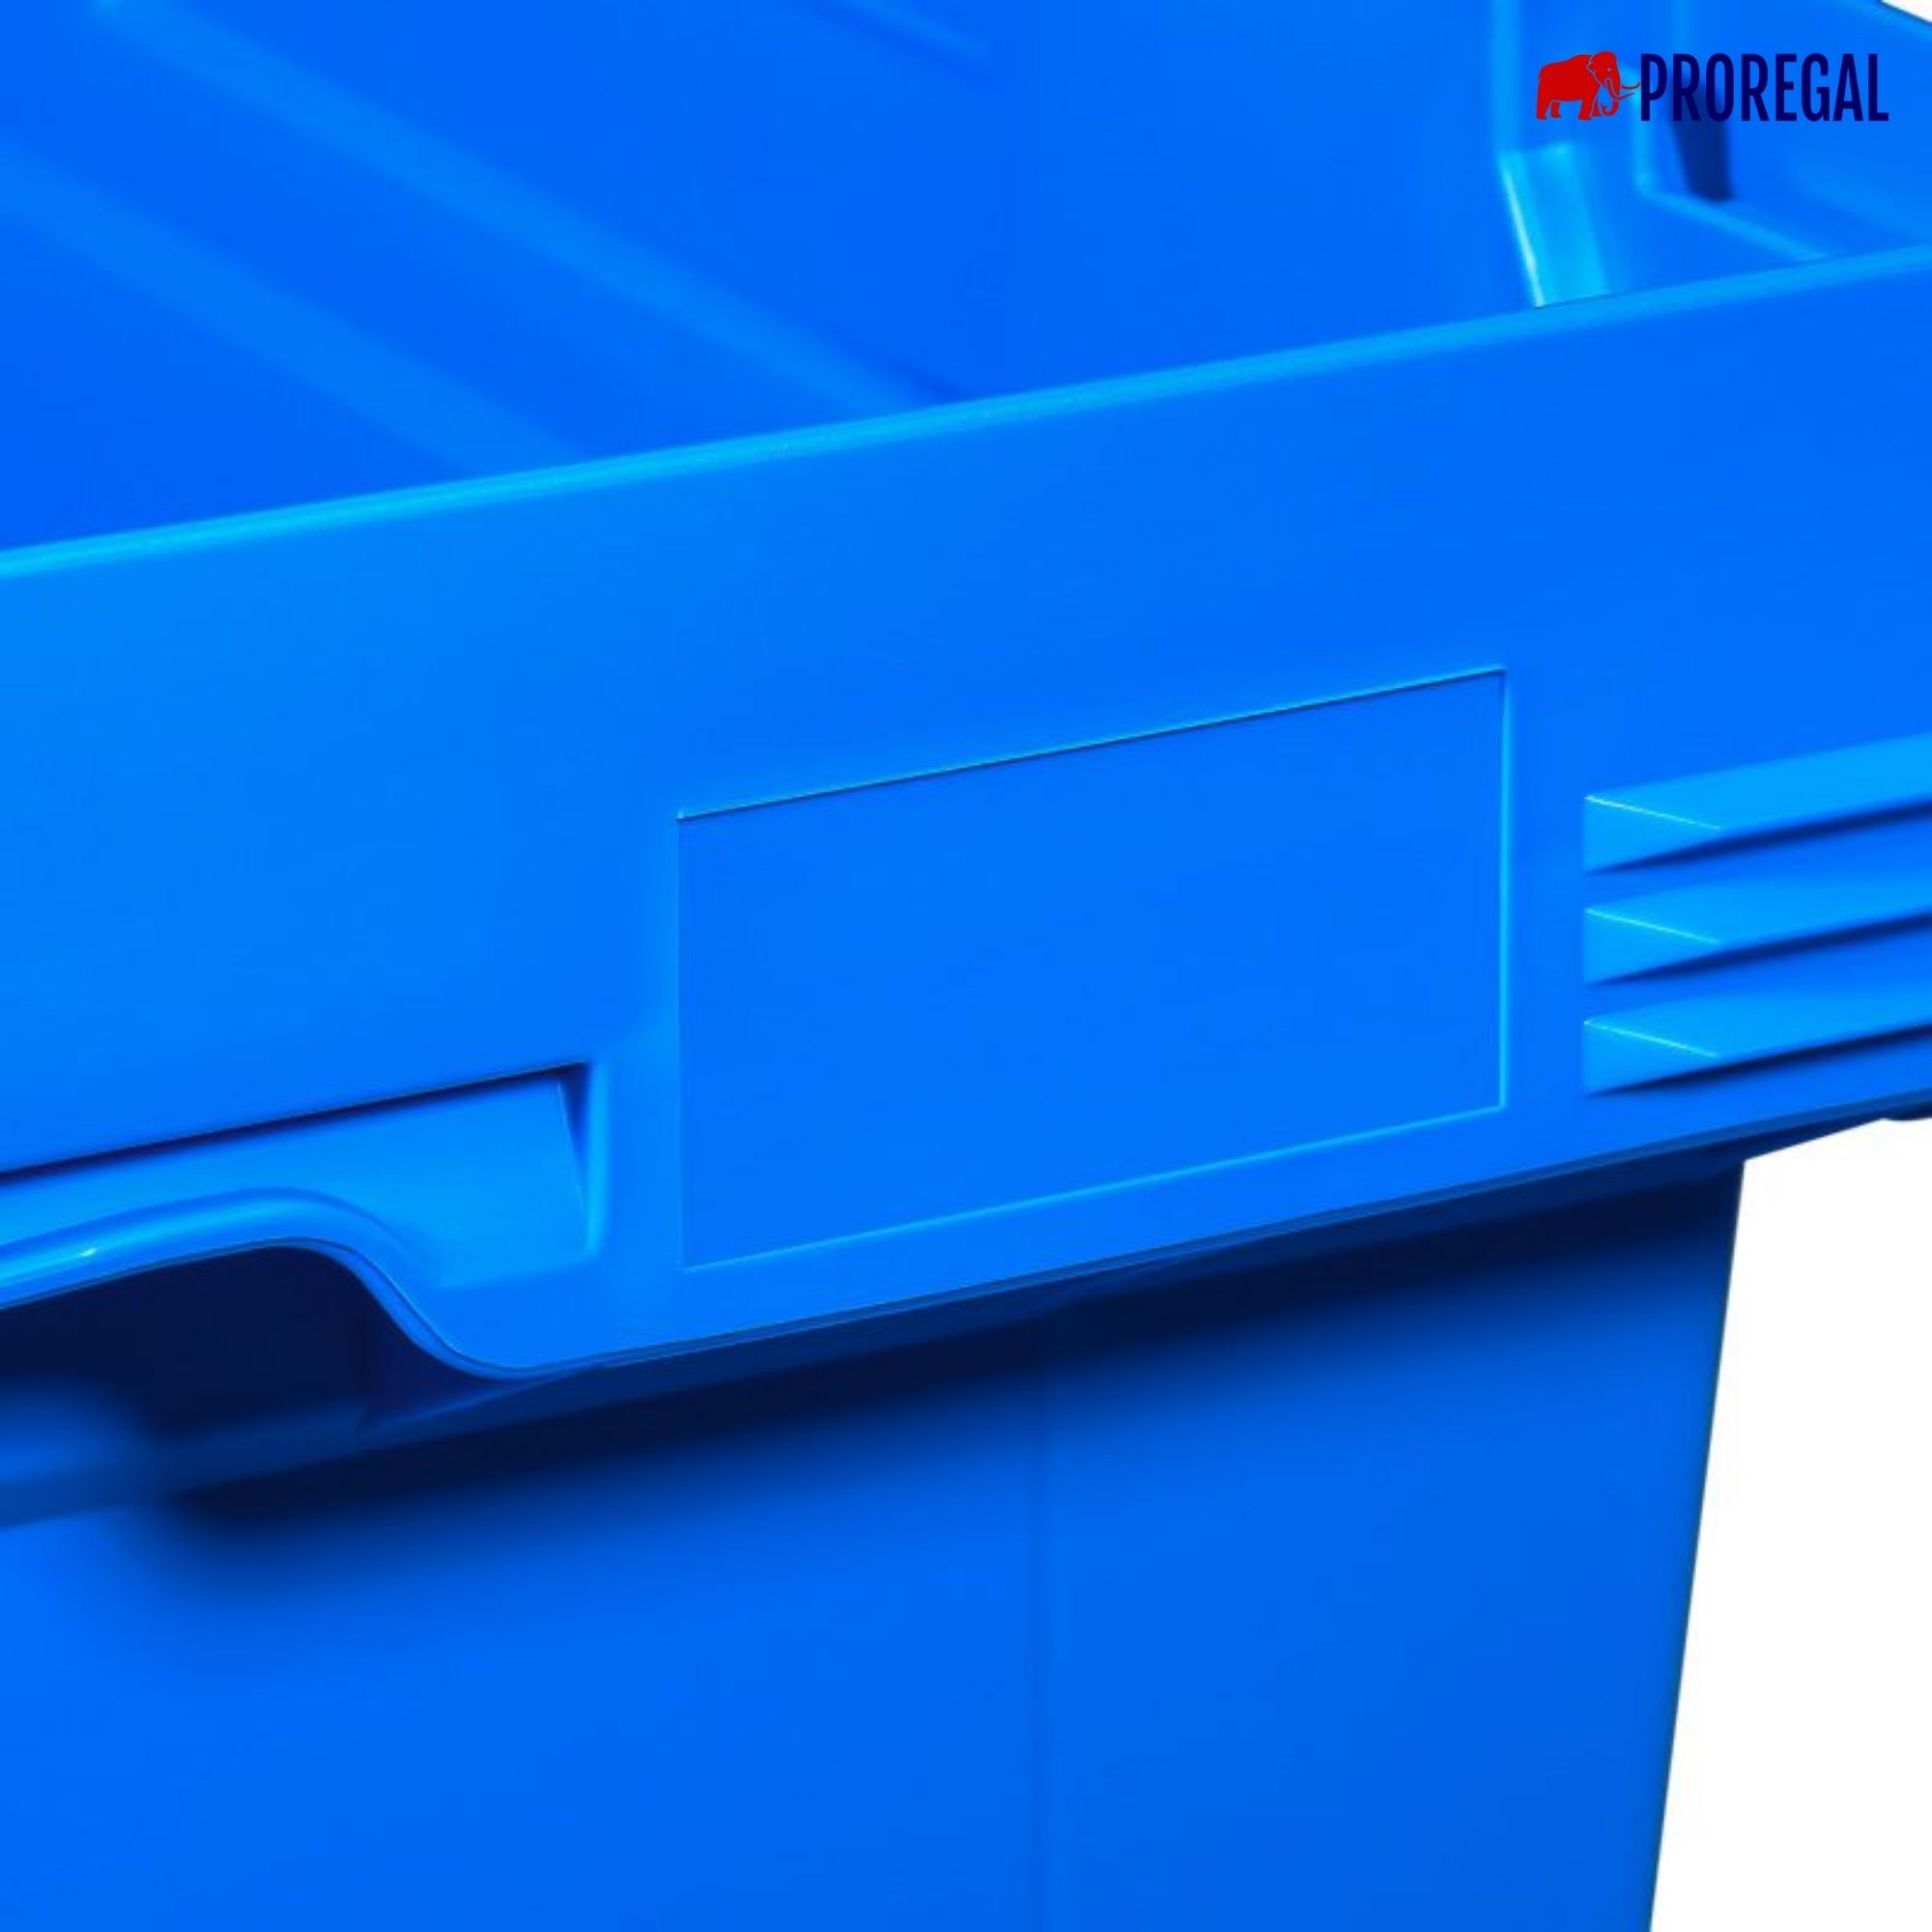 SparSet 10x Conical Mehrweg-Stapelbehälter mit Stapelbügel Blau | HxBxT 27,3x40x60cm | 47 Liter | Lagerbox Eurobox Transportbox Transportbehälter Stapelbehälter